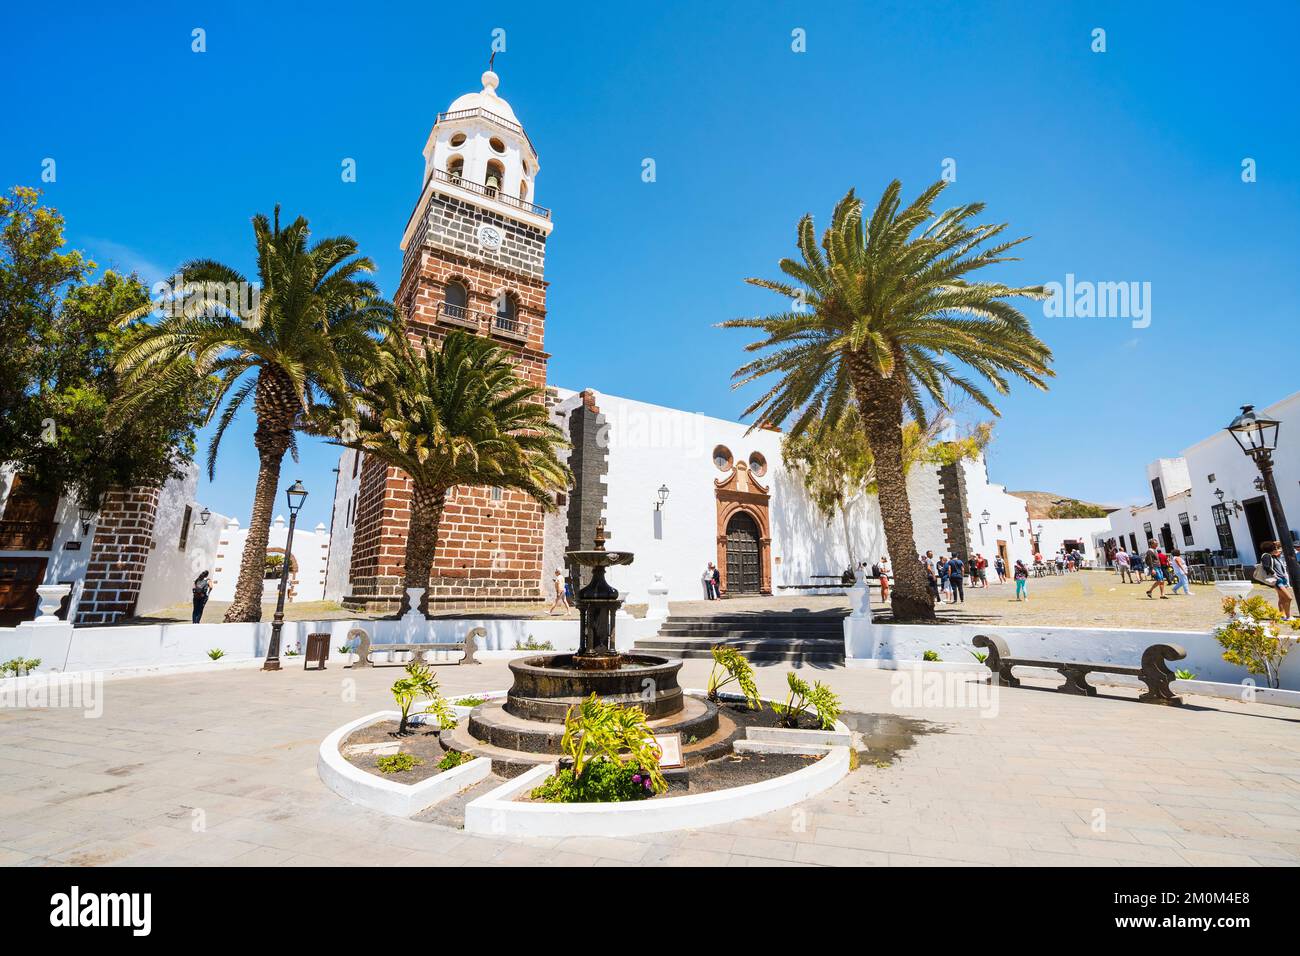 Vieille église de notre dame de Guadalupe - le principal monument historique de Teguise, Lanzarote, îles Canaries, Espagne Banque D'Images